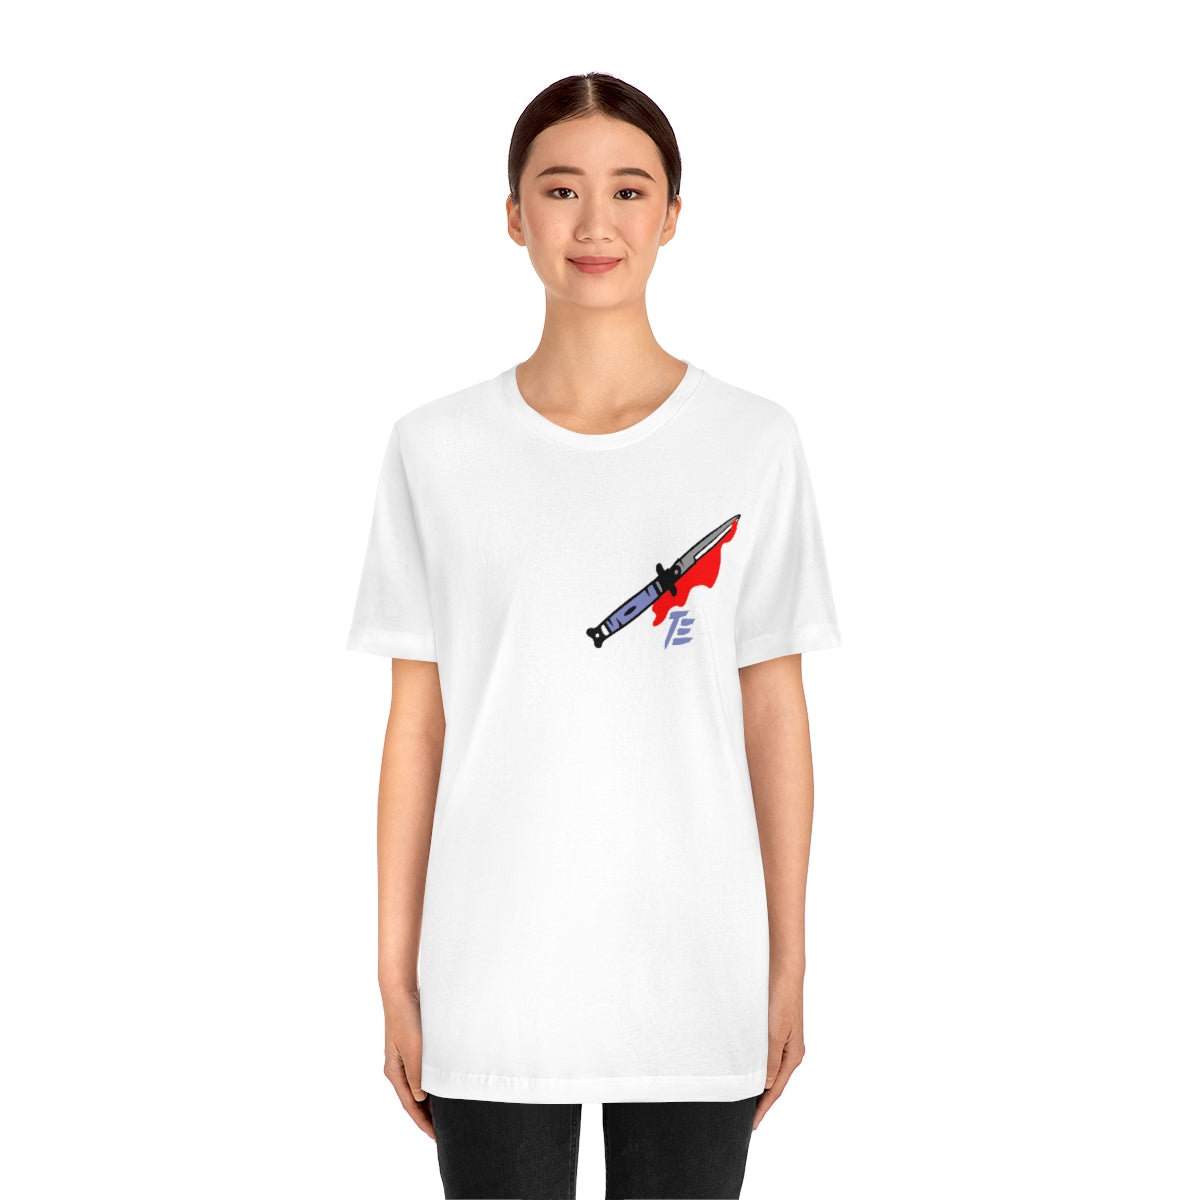 Switchblade Knife TimeElements | Minimal Fashion Unisex T-shirt